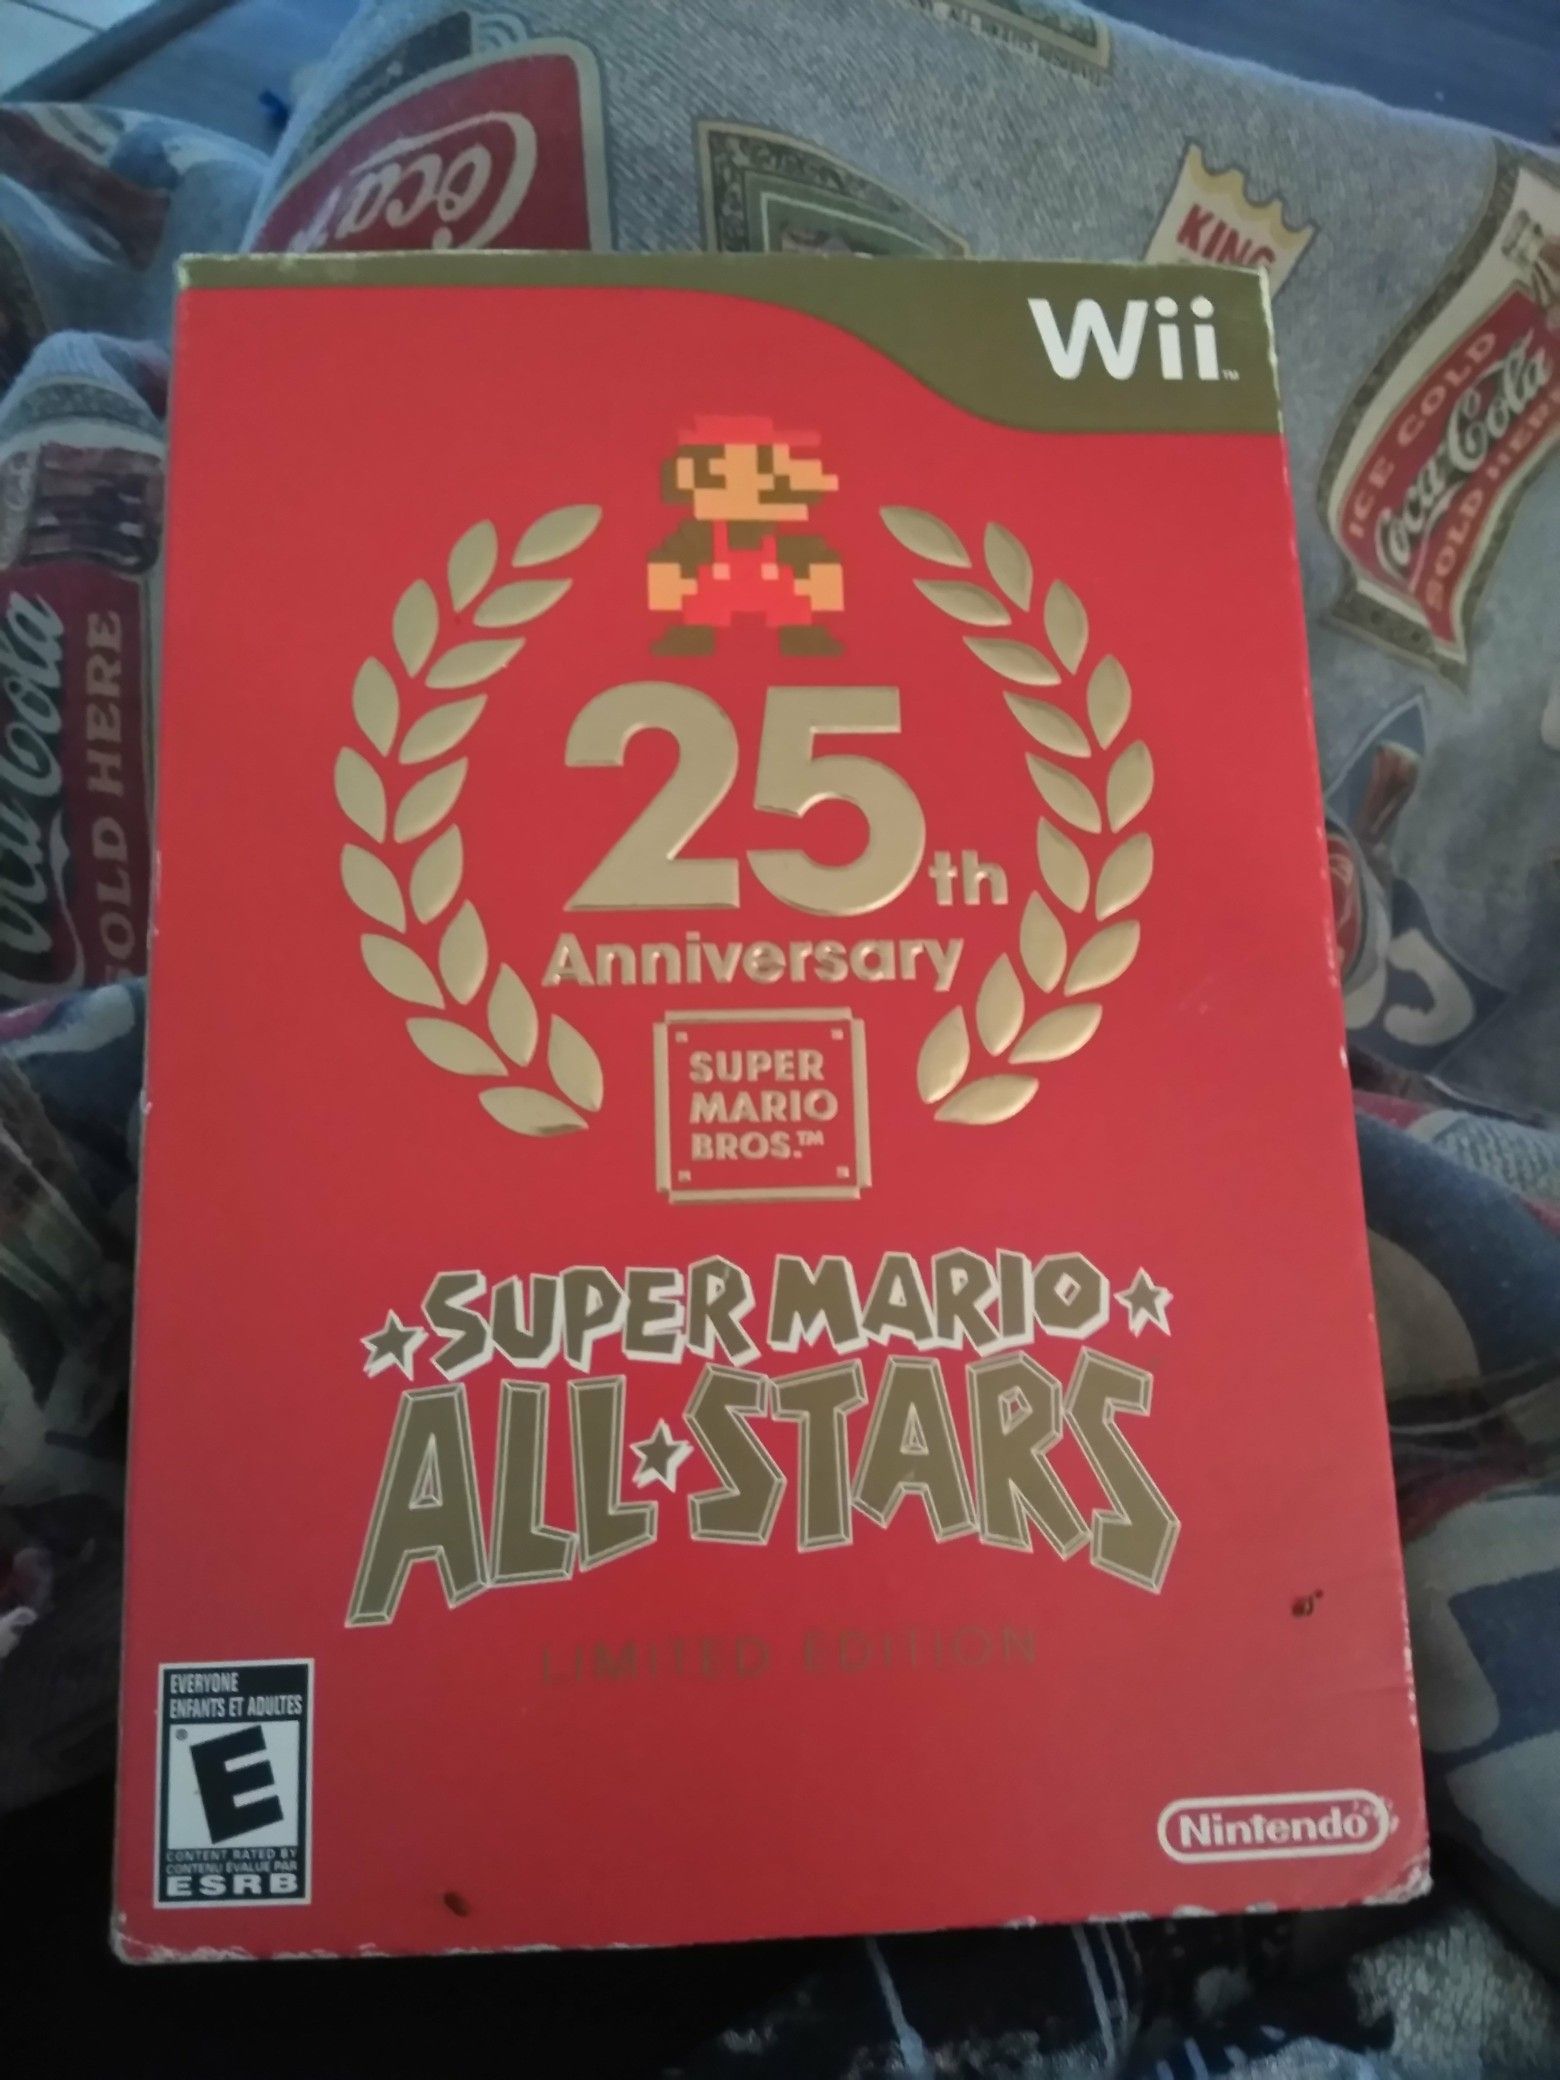 25th Anniversary Super Mario Bro Limited Edition Wii